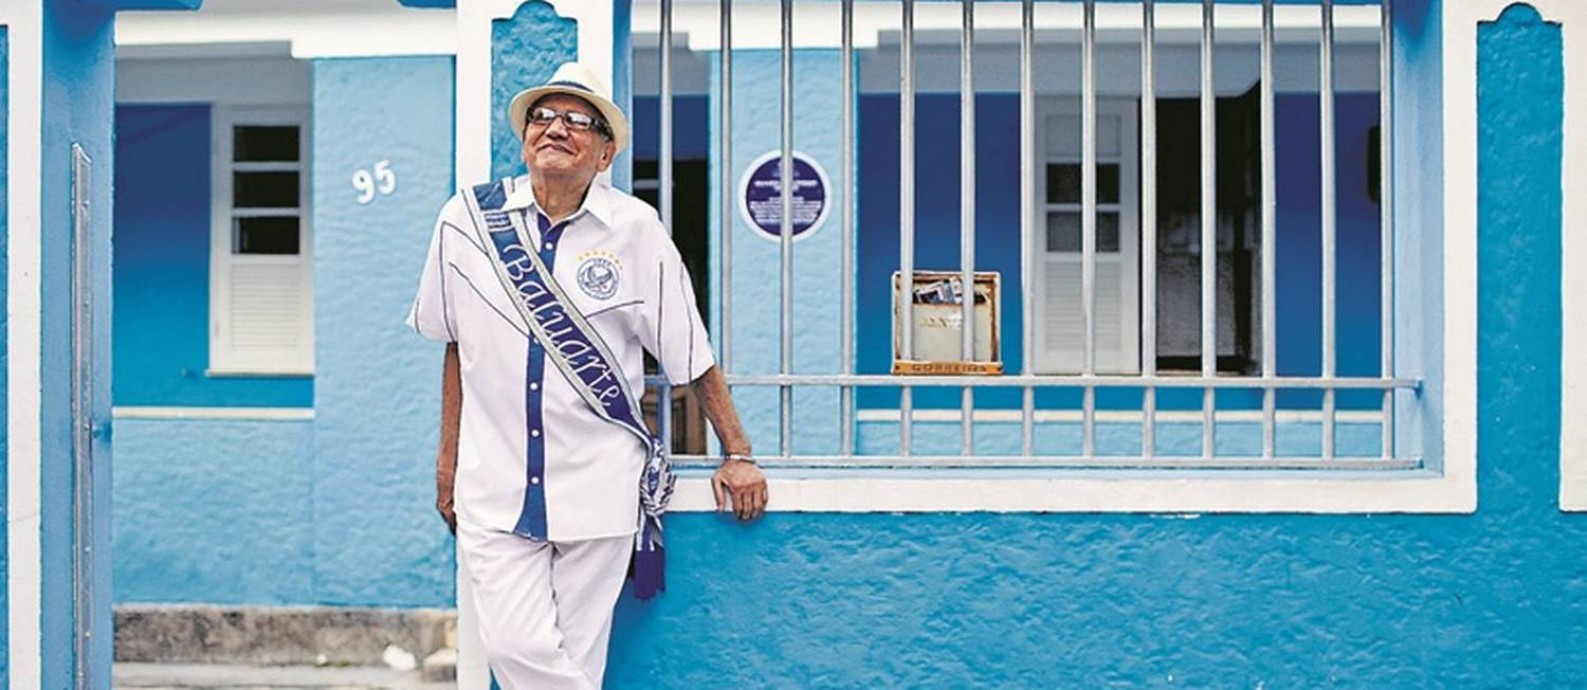 
Waldomiro Meirelles, o Seu Mirinho, de 89 anos, diante de sua casa que tem as cores da Portela
Foto:
Agência O Globo
/
Marcelo Theobald
